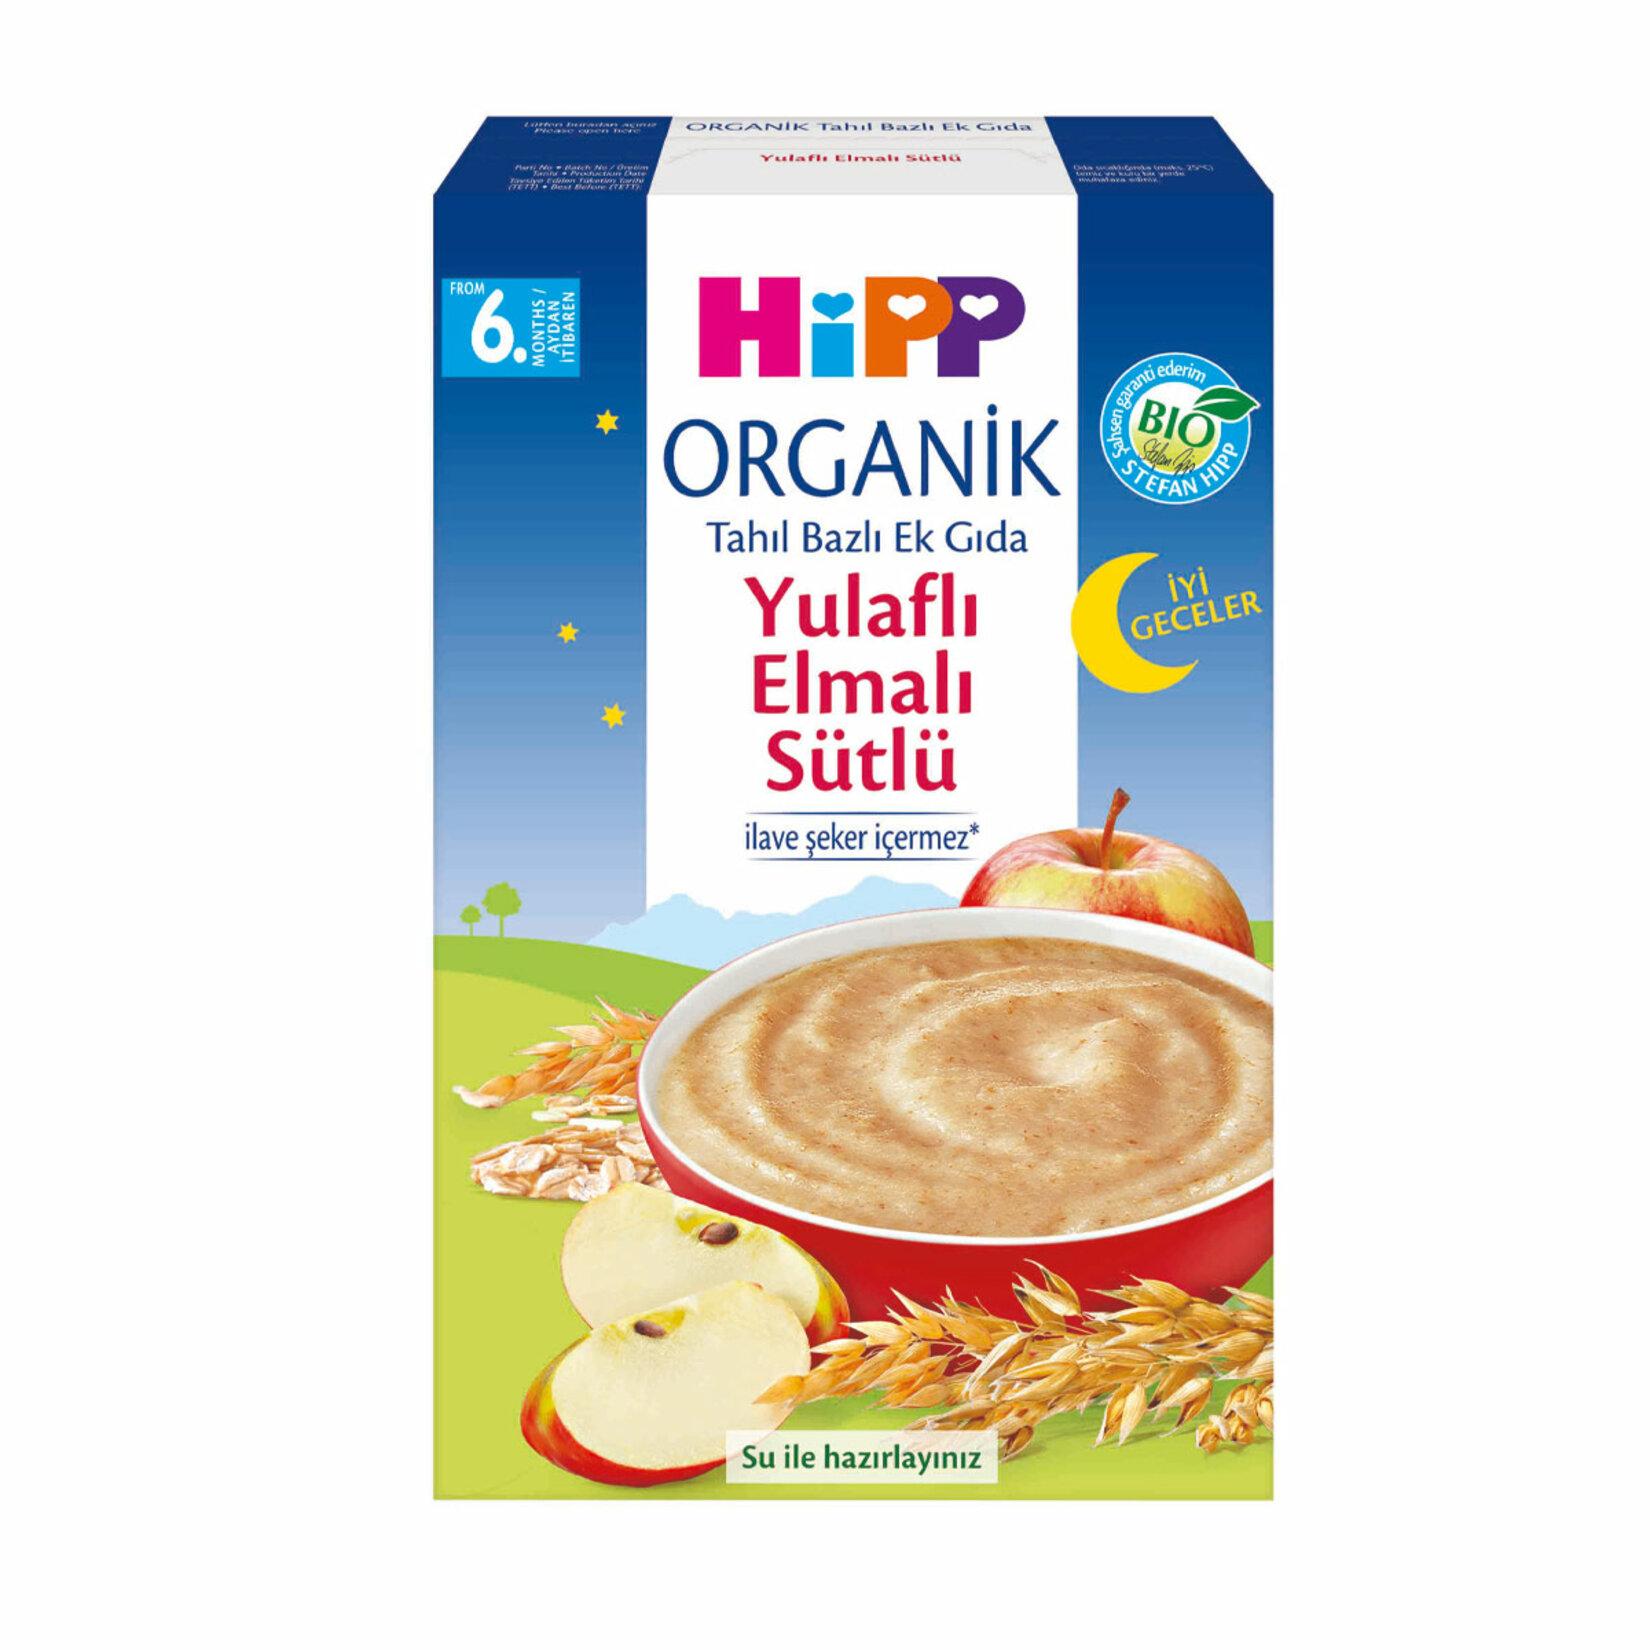 Hipp Organik İyi Geceler Yulaflı Elmalı Sütlü Kaşık Mama 250 gr 3'lü Paket